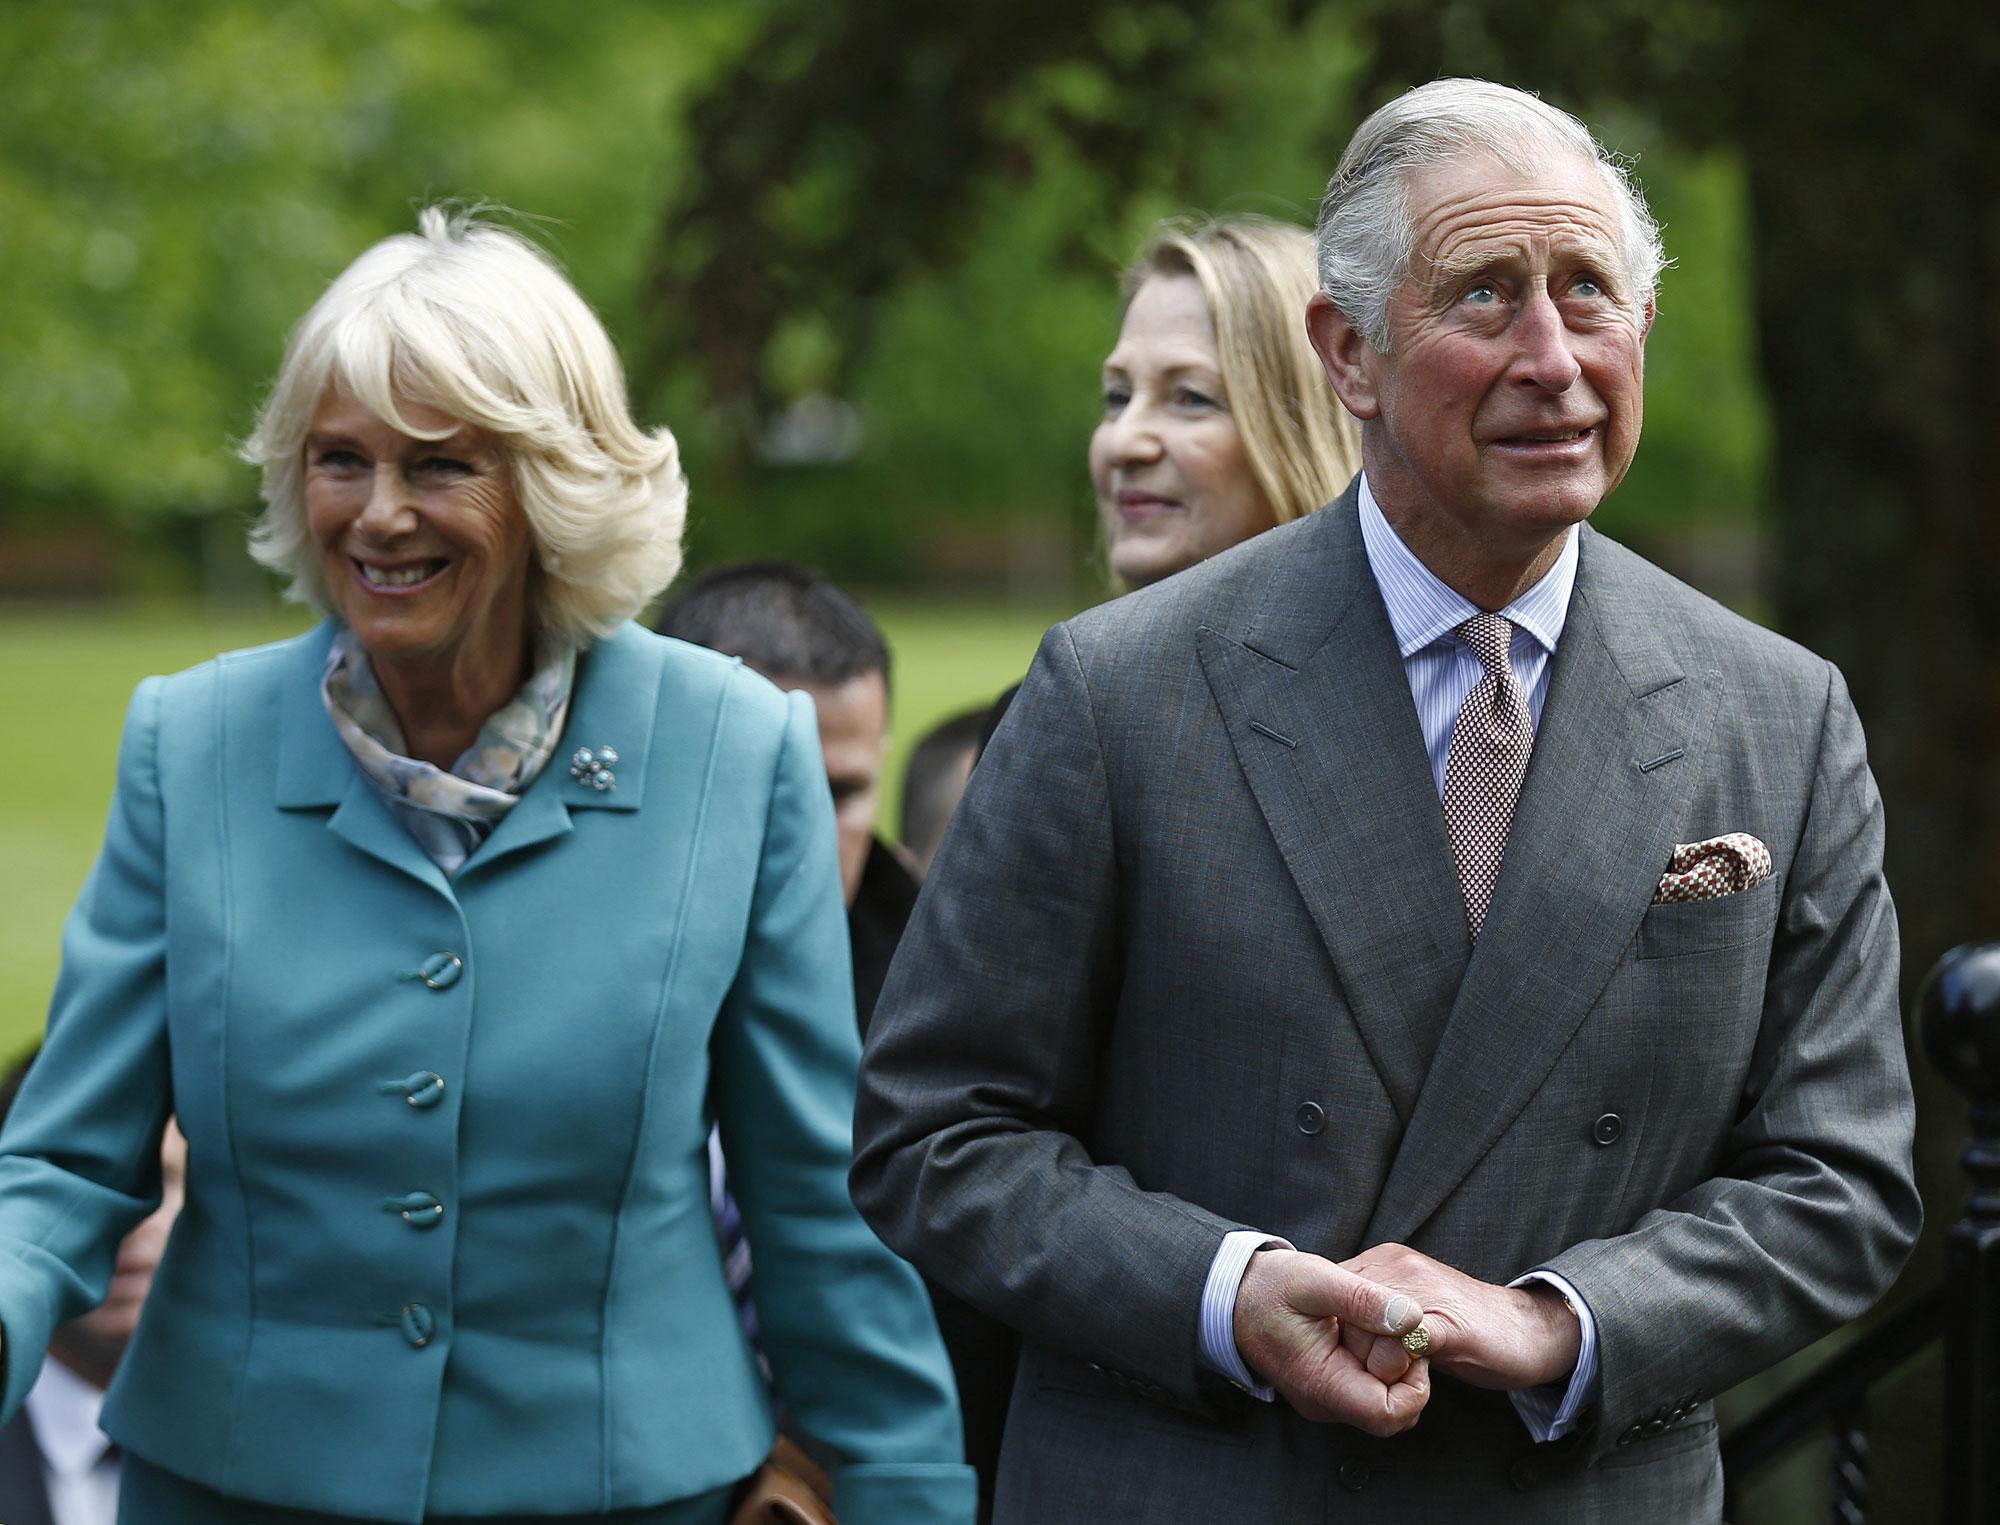 Le prince Charles et son épouse Camilla à Galway,19.05.2015. [Reuters - Darren Staples]